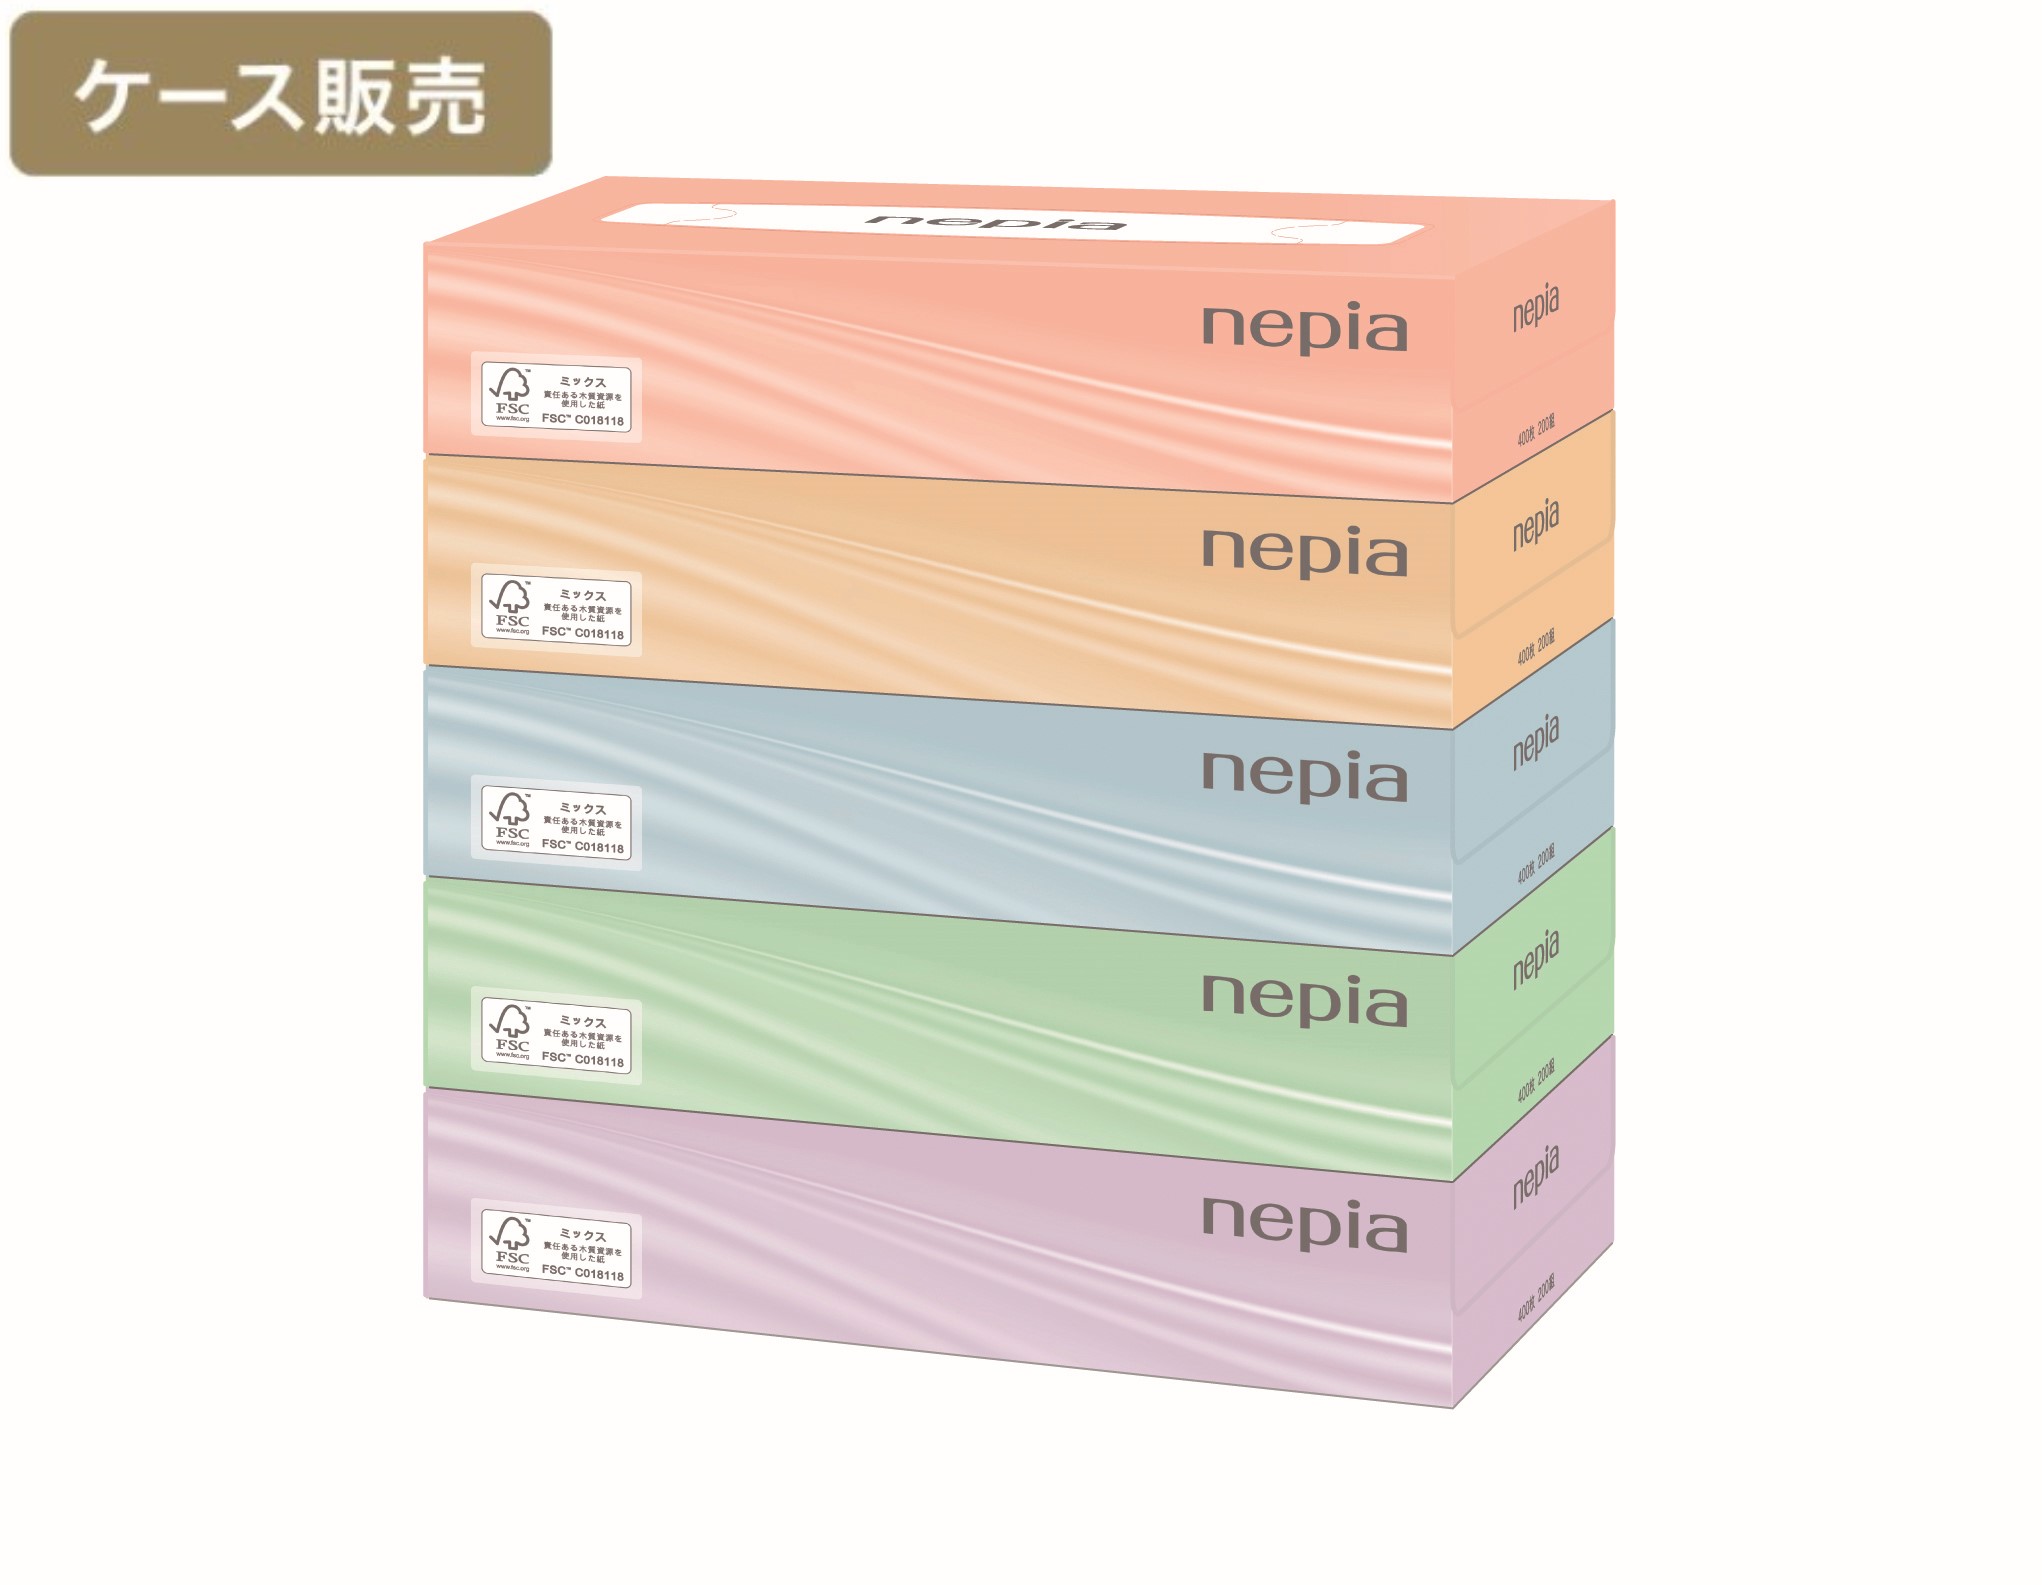 【ケース販売】ネピアティシュ 200組5コパック ×12パック